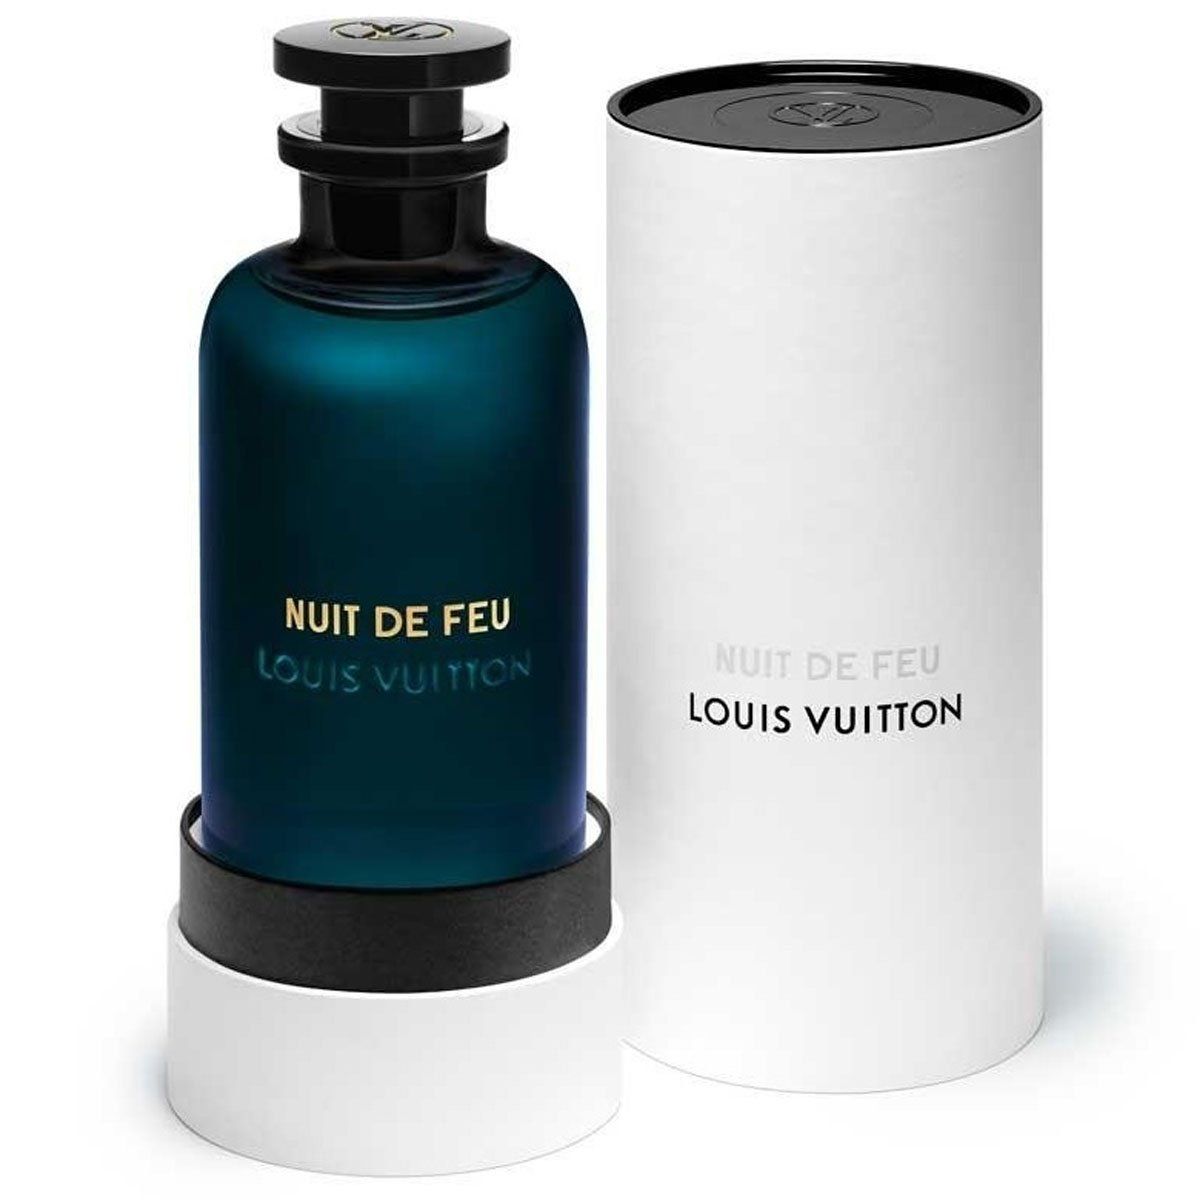  Louis Vuitton Nuit de Feu 